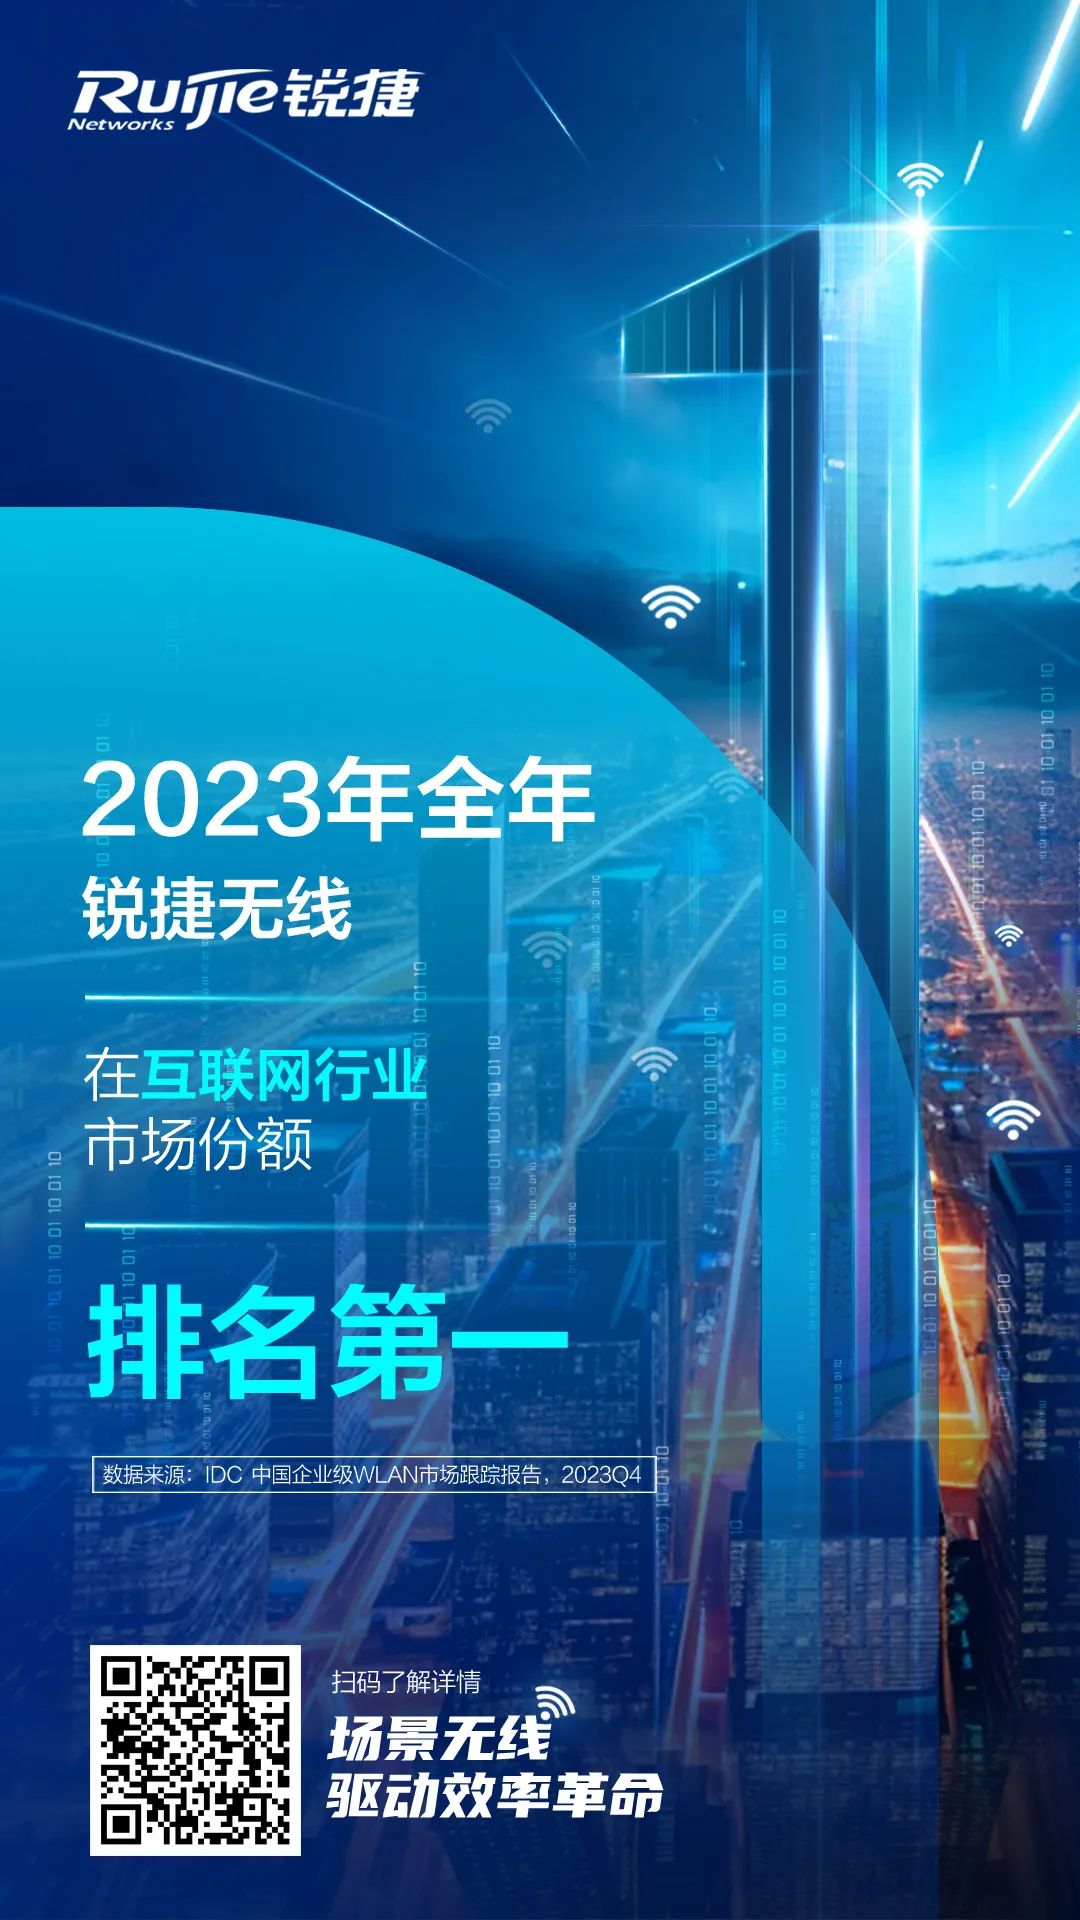 2023年全年锐捷无线在互联网行业市场份额排名第一